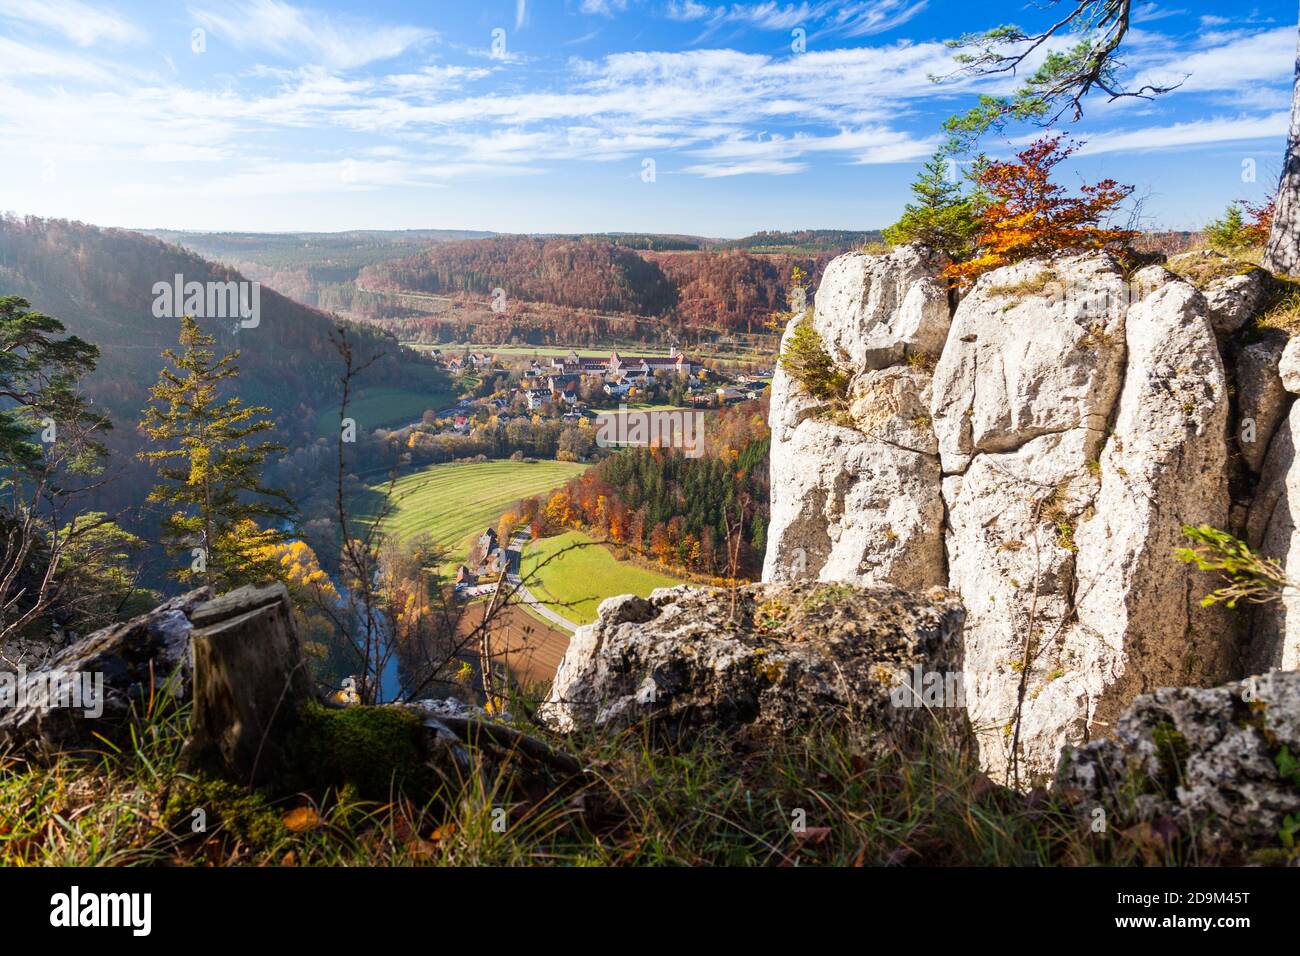 Beuron im oberen Donautal, Deutschland Stockfoto